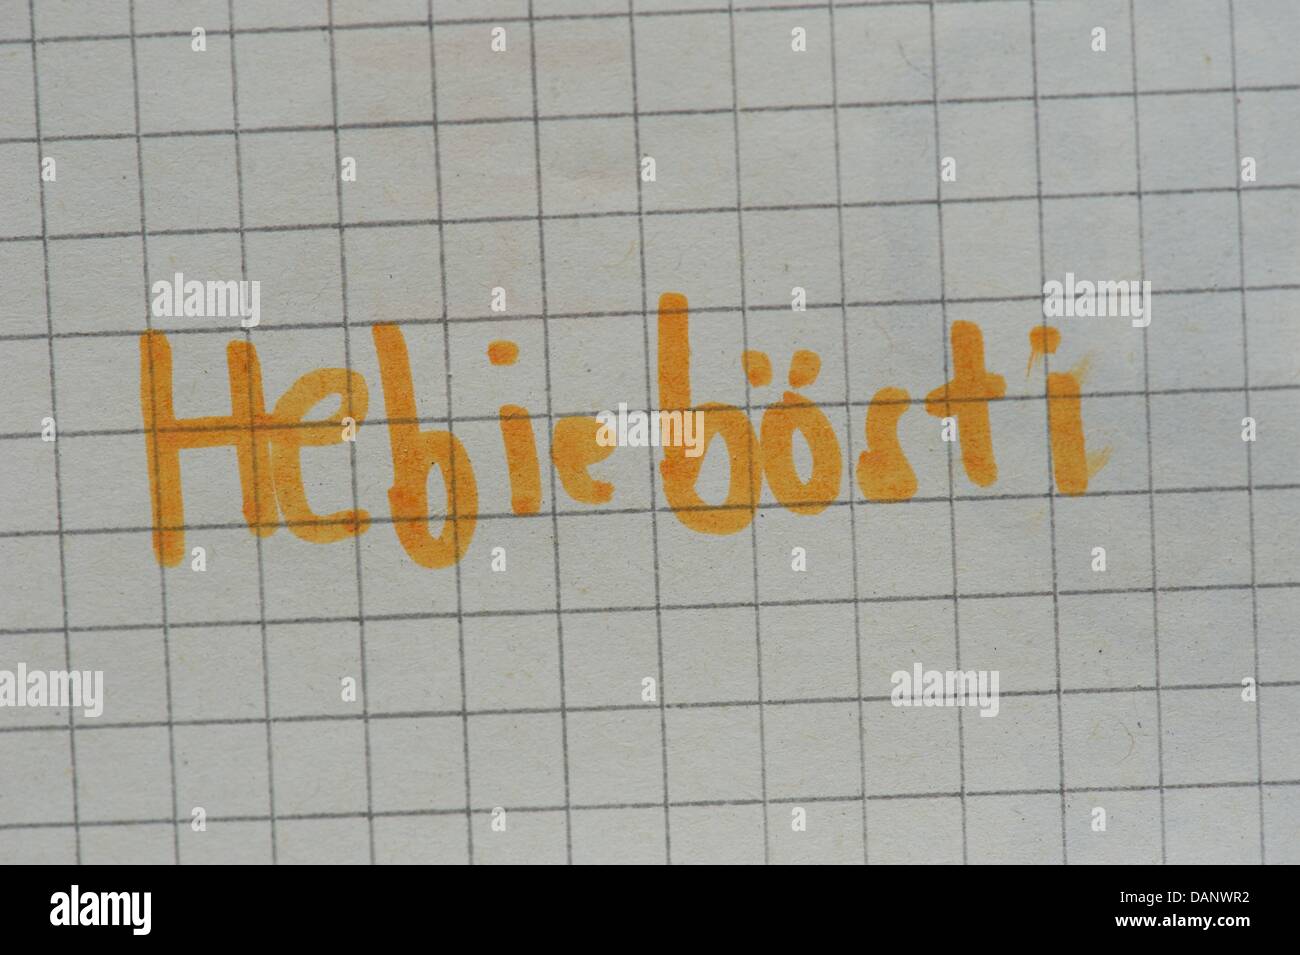 Die Lautschrift eine siebenjährige liest "Hebieboesti" (Hebiebösti) für die englische 'Happy Birthday' in Leipzig, Deutschland, 20. Juni 2011. Foto: Peter Endig Stockfoto